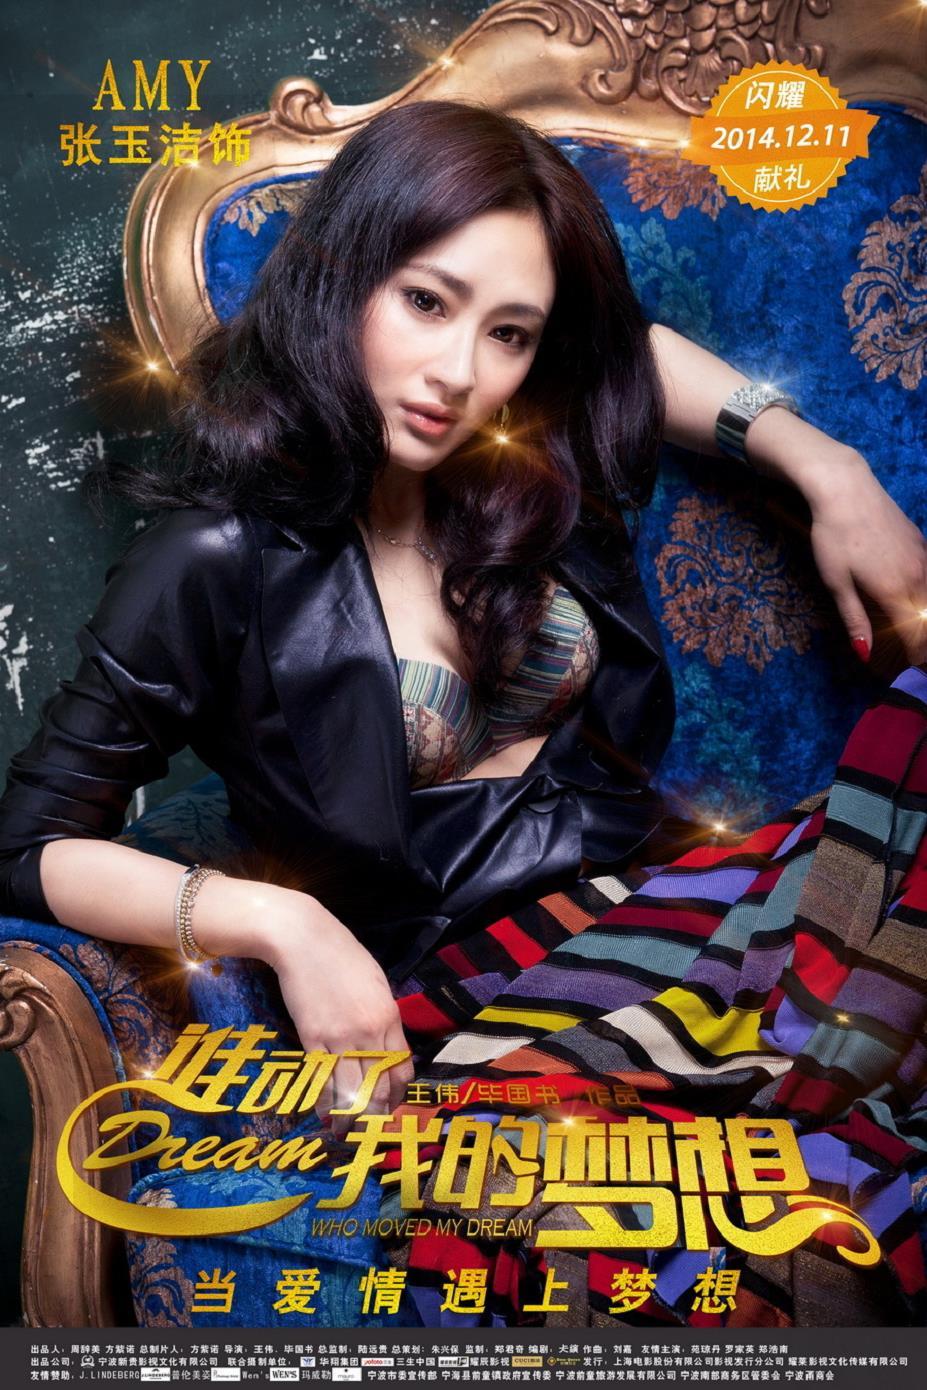 电影《谁动了我的梦想》发布人物海报,《谁动了我的梦想》张玉洁饰演AMY